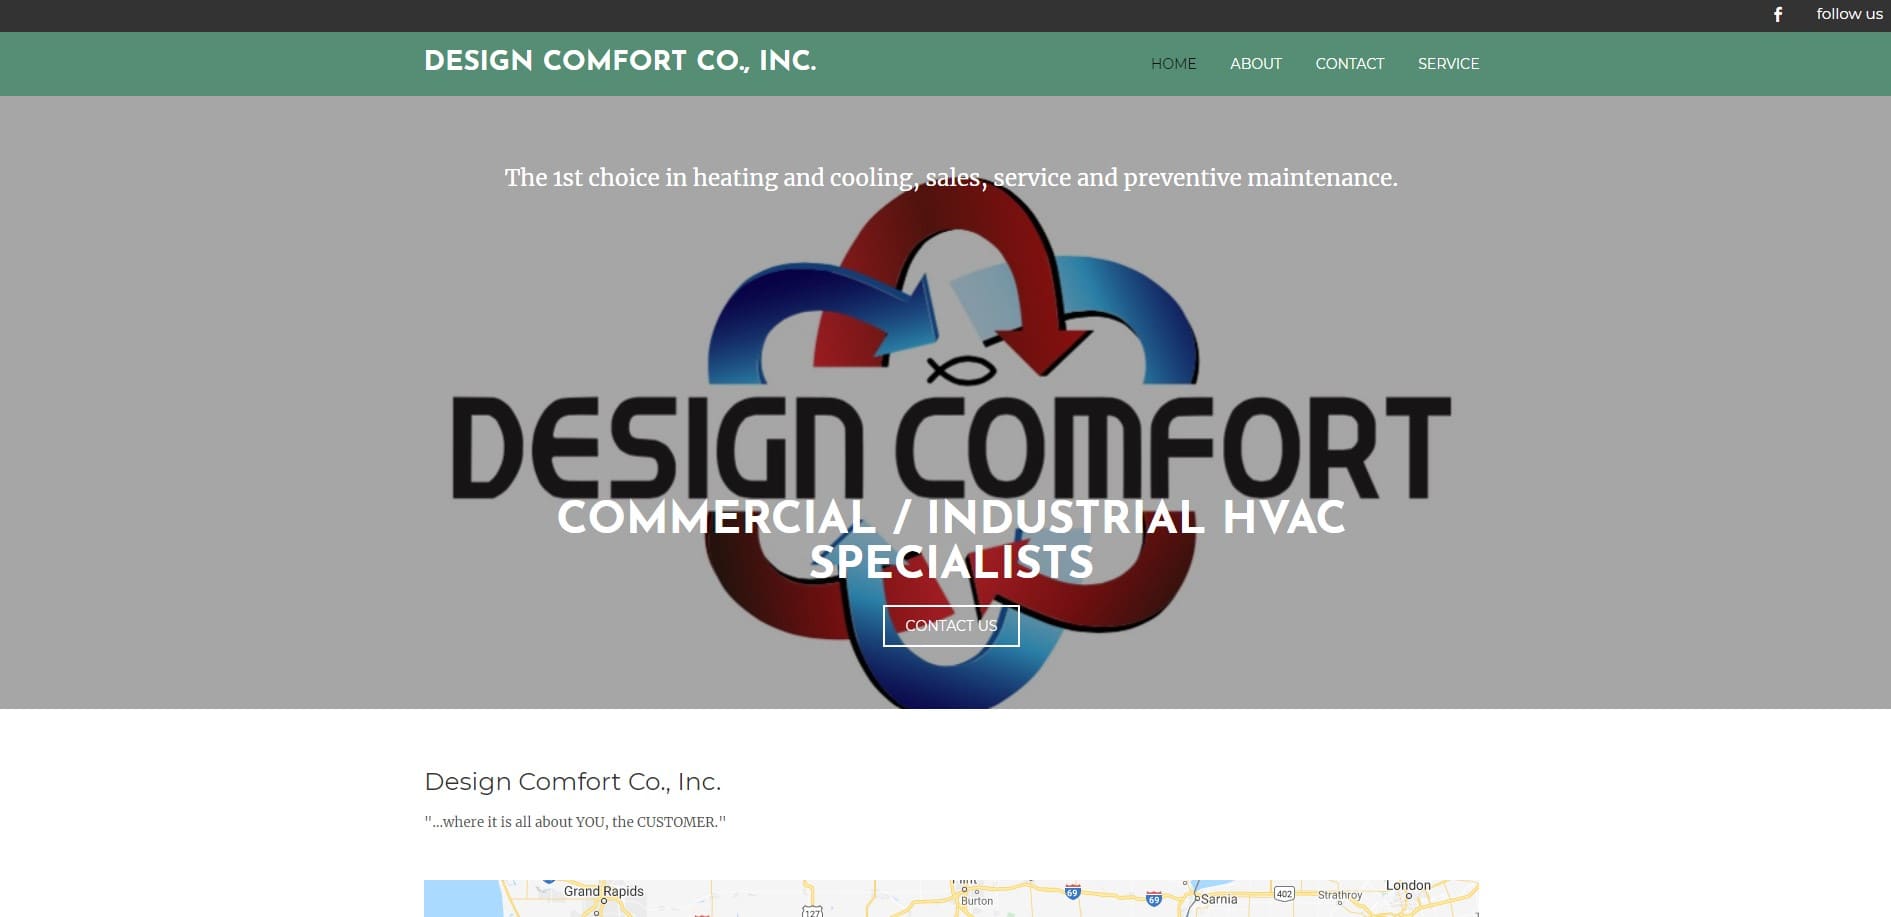 Design Comfort Co., Inc.